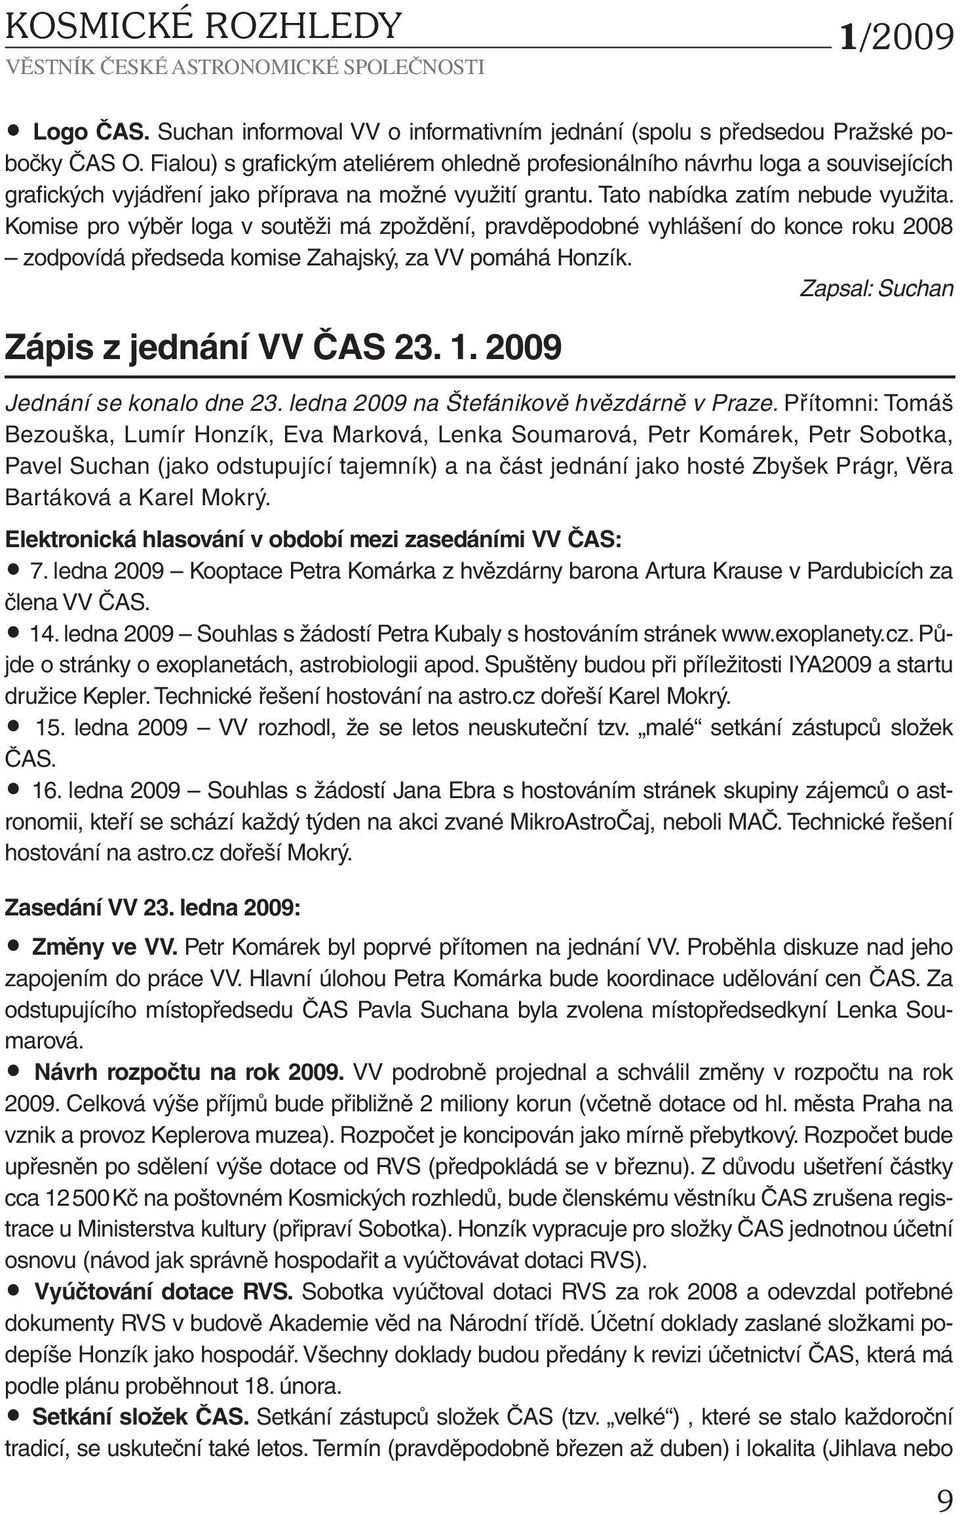 Komise pro výběr loga v soutěži má zpoždění, pravděpodobné vyhlášení do konce roku 2008 zodpovídá předseda komise Zahajský, za VV pomáhá Honzík. Zapsal: Suchan Zápis z jednání VV ČAS 23. 1.